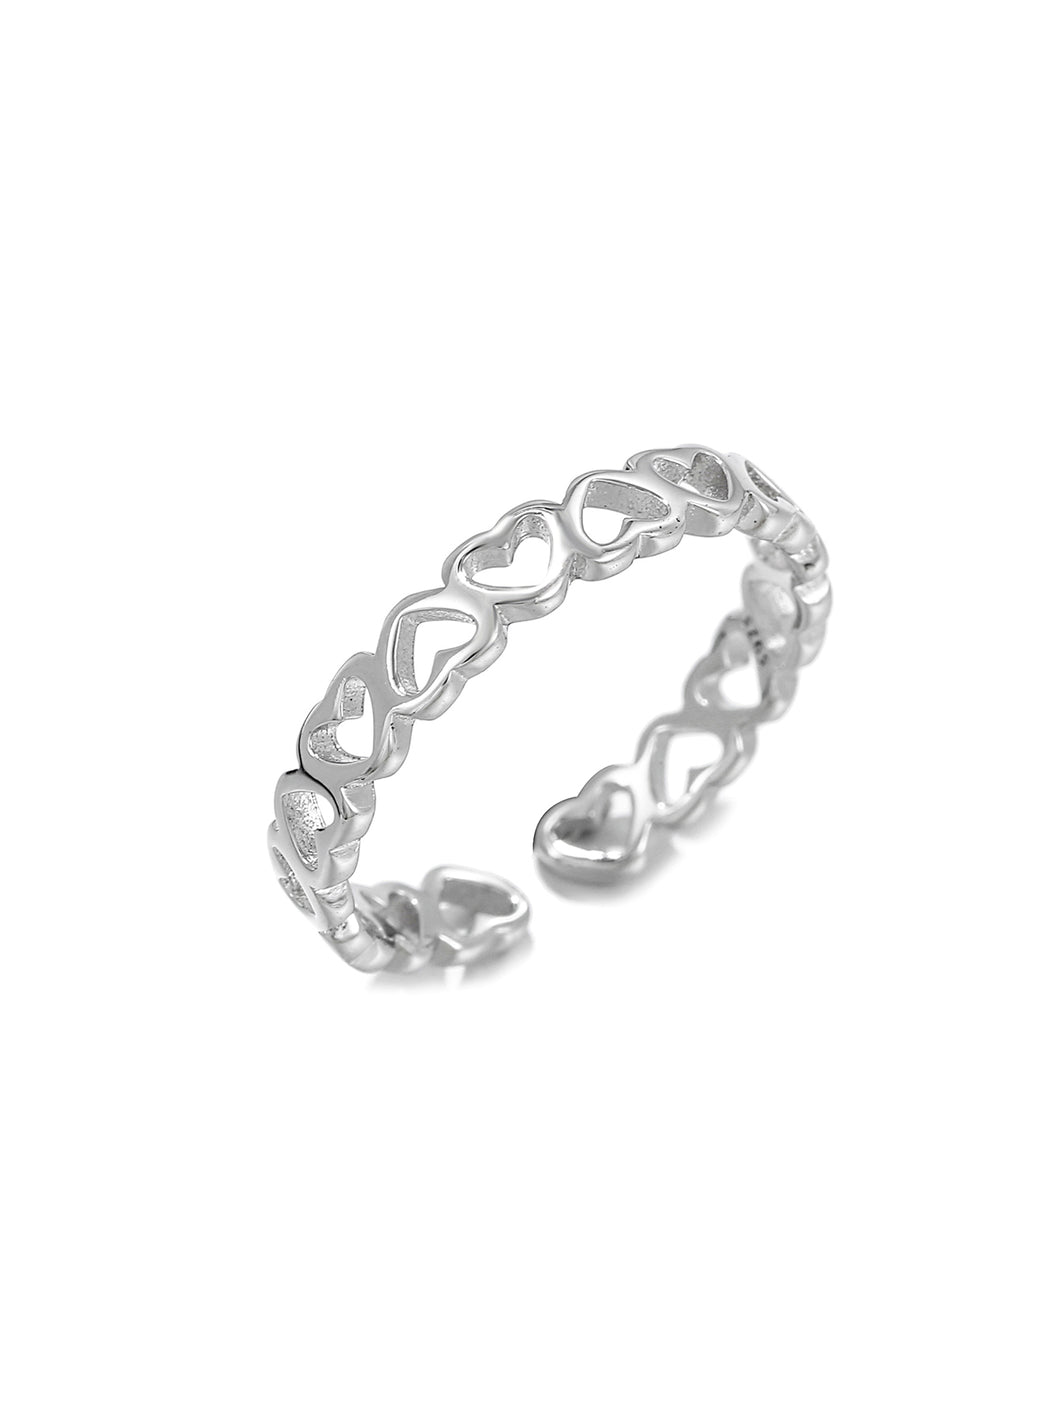 Heart Decor Cuff Silver Ring